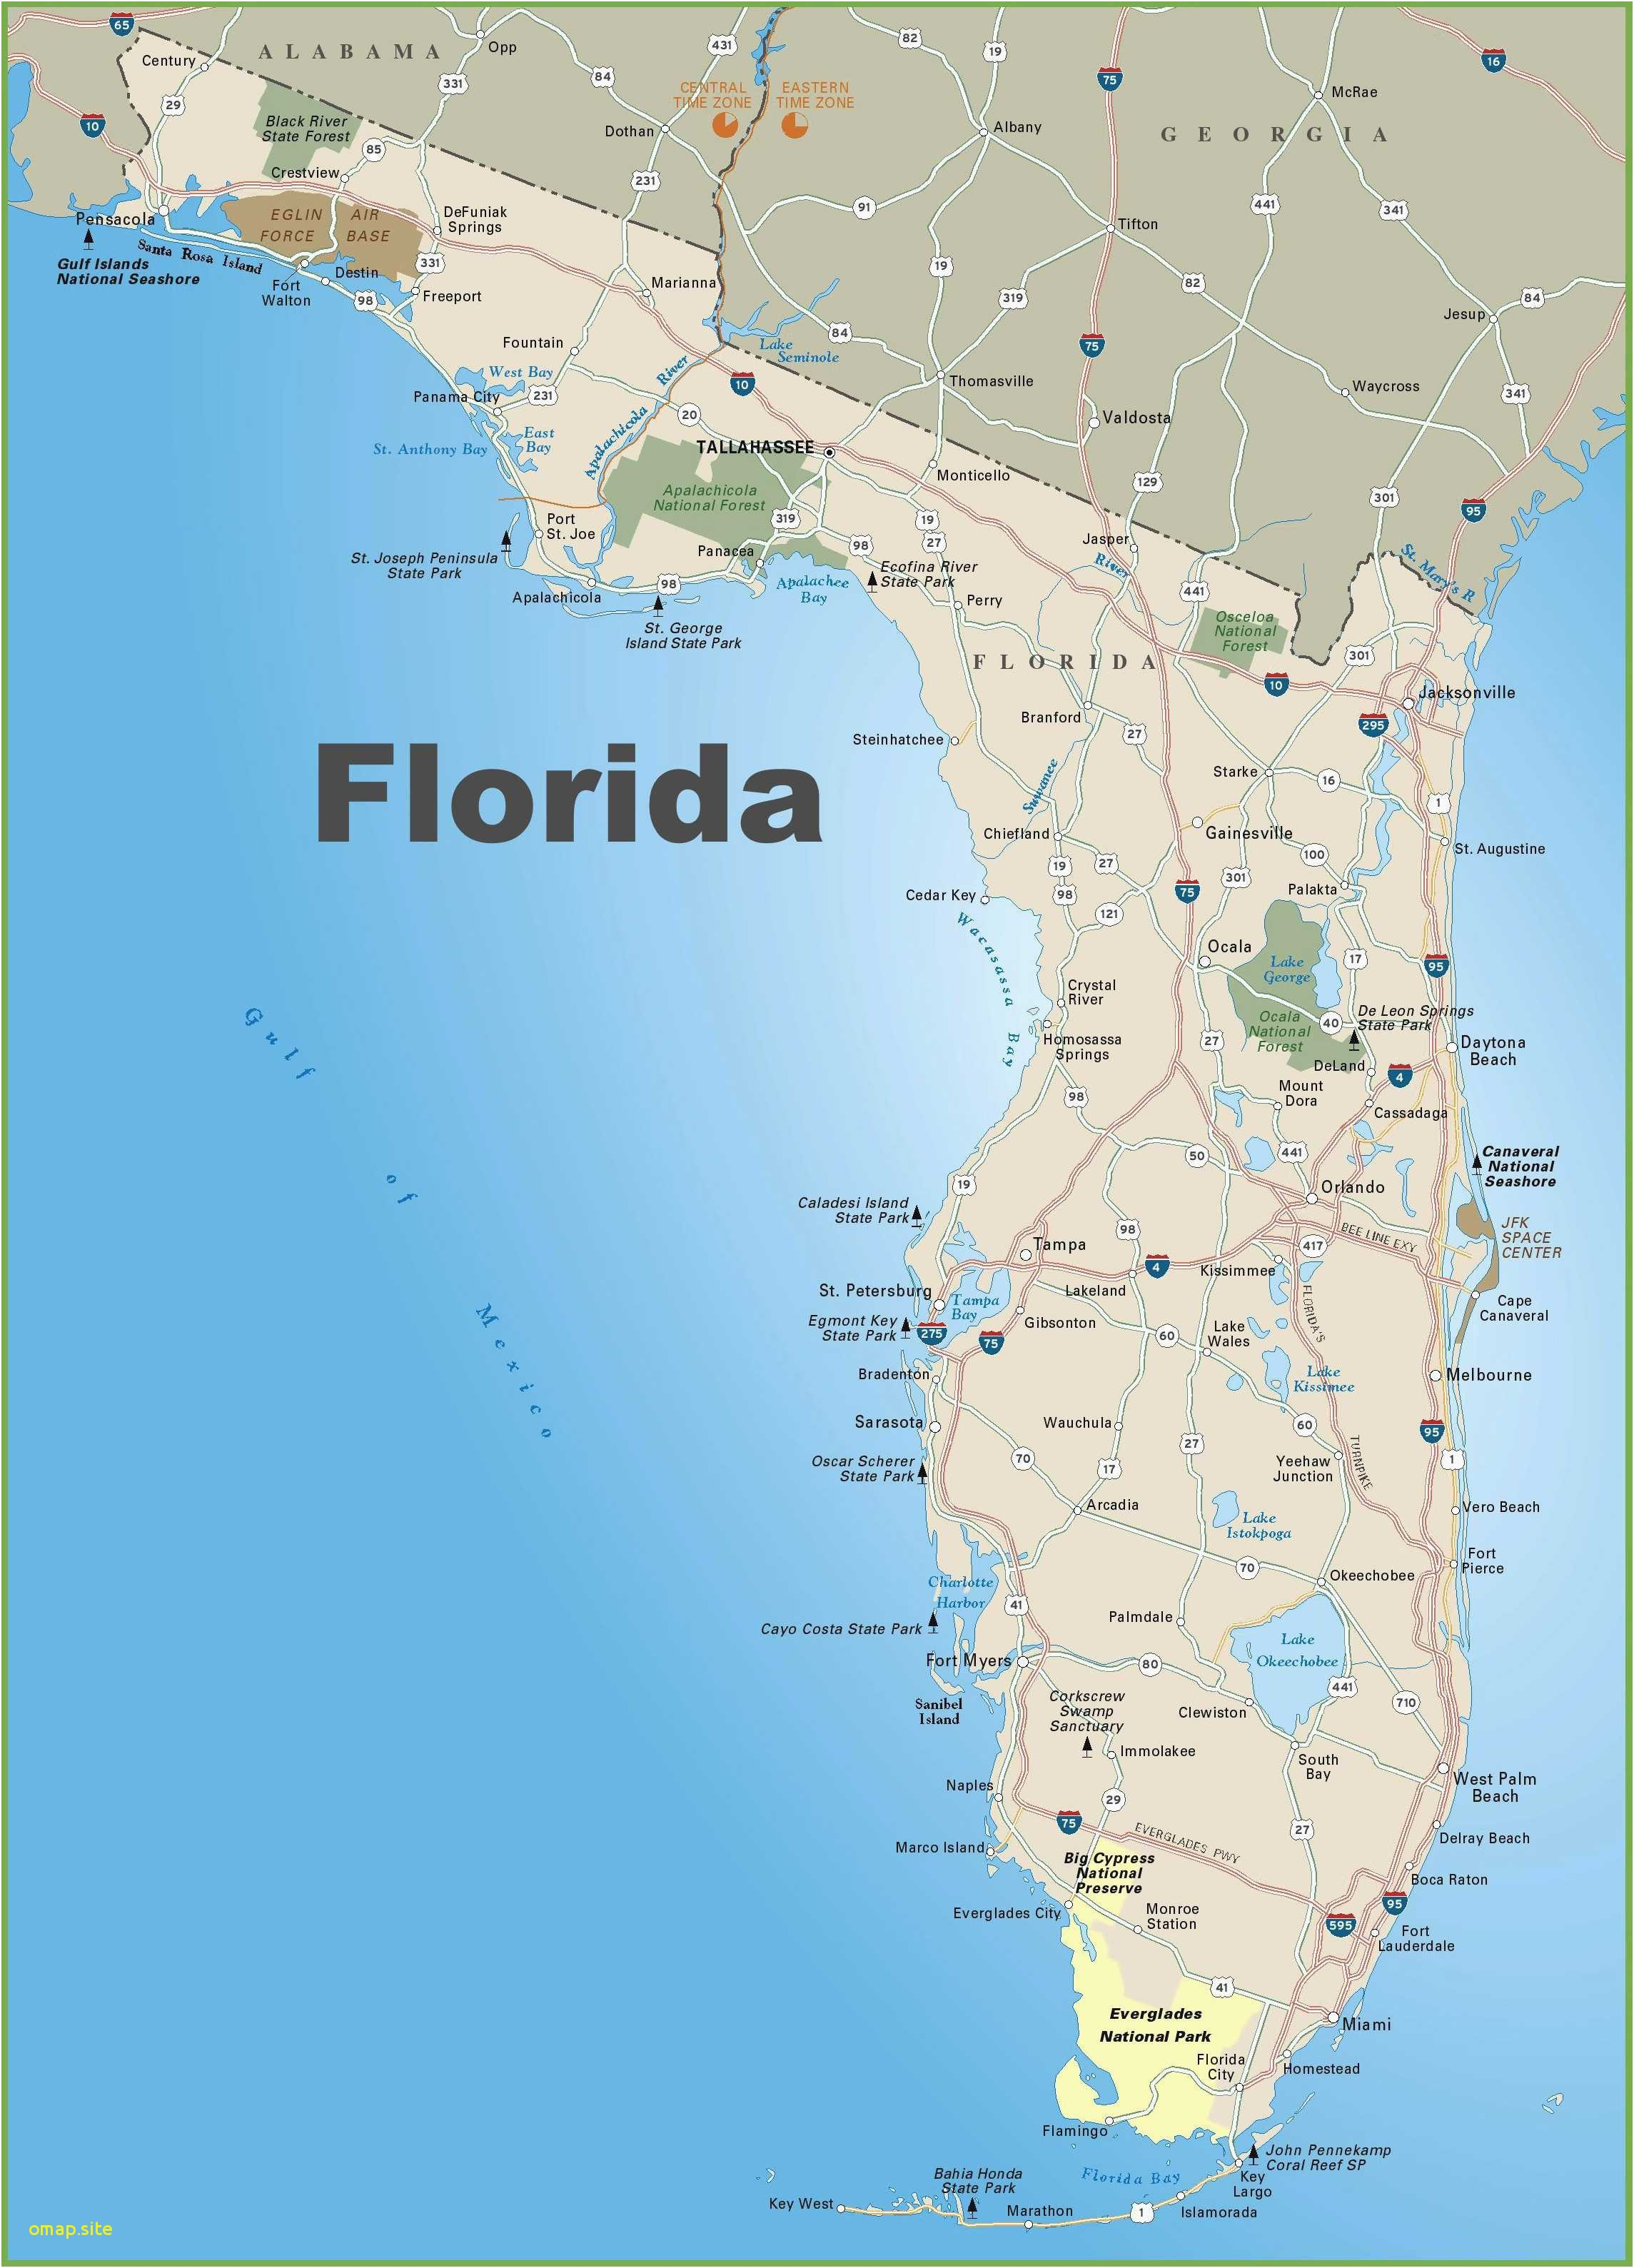 Del Ray Florida Map - Del Ray Florida Map